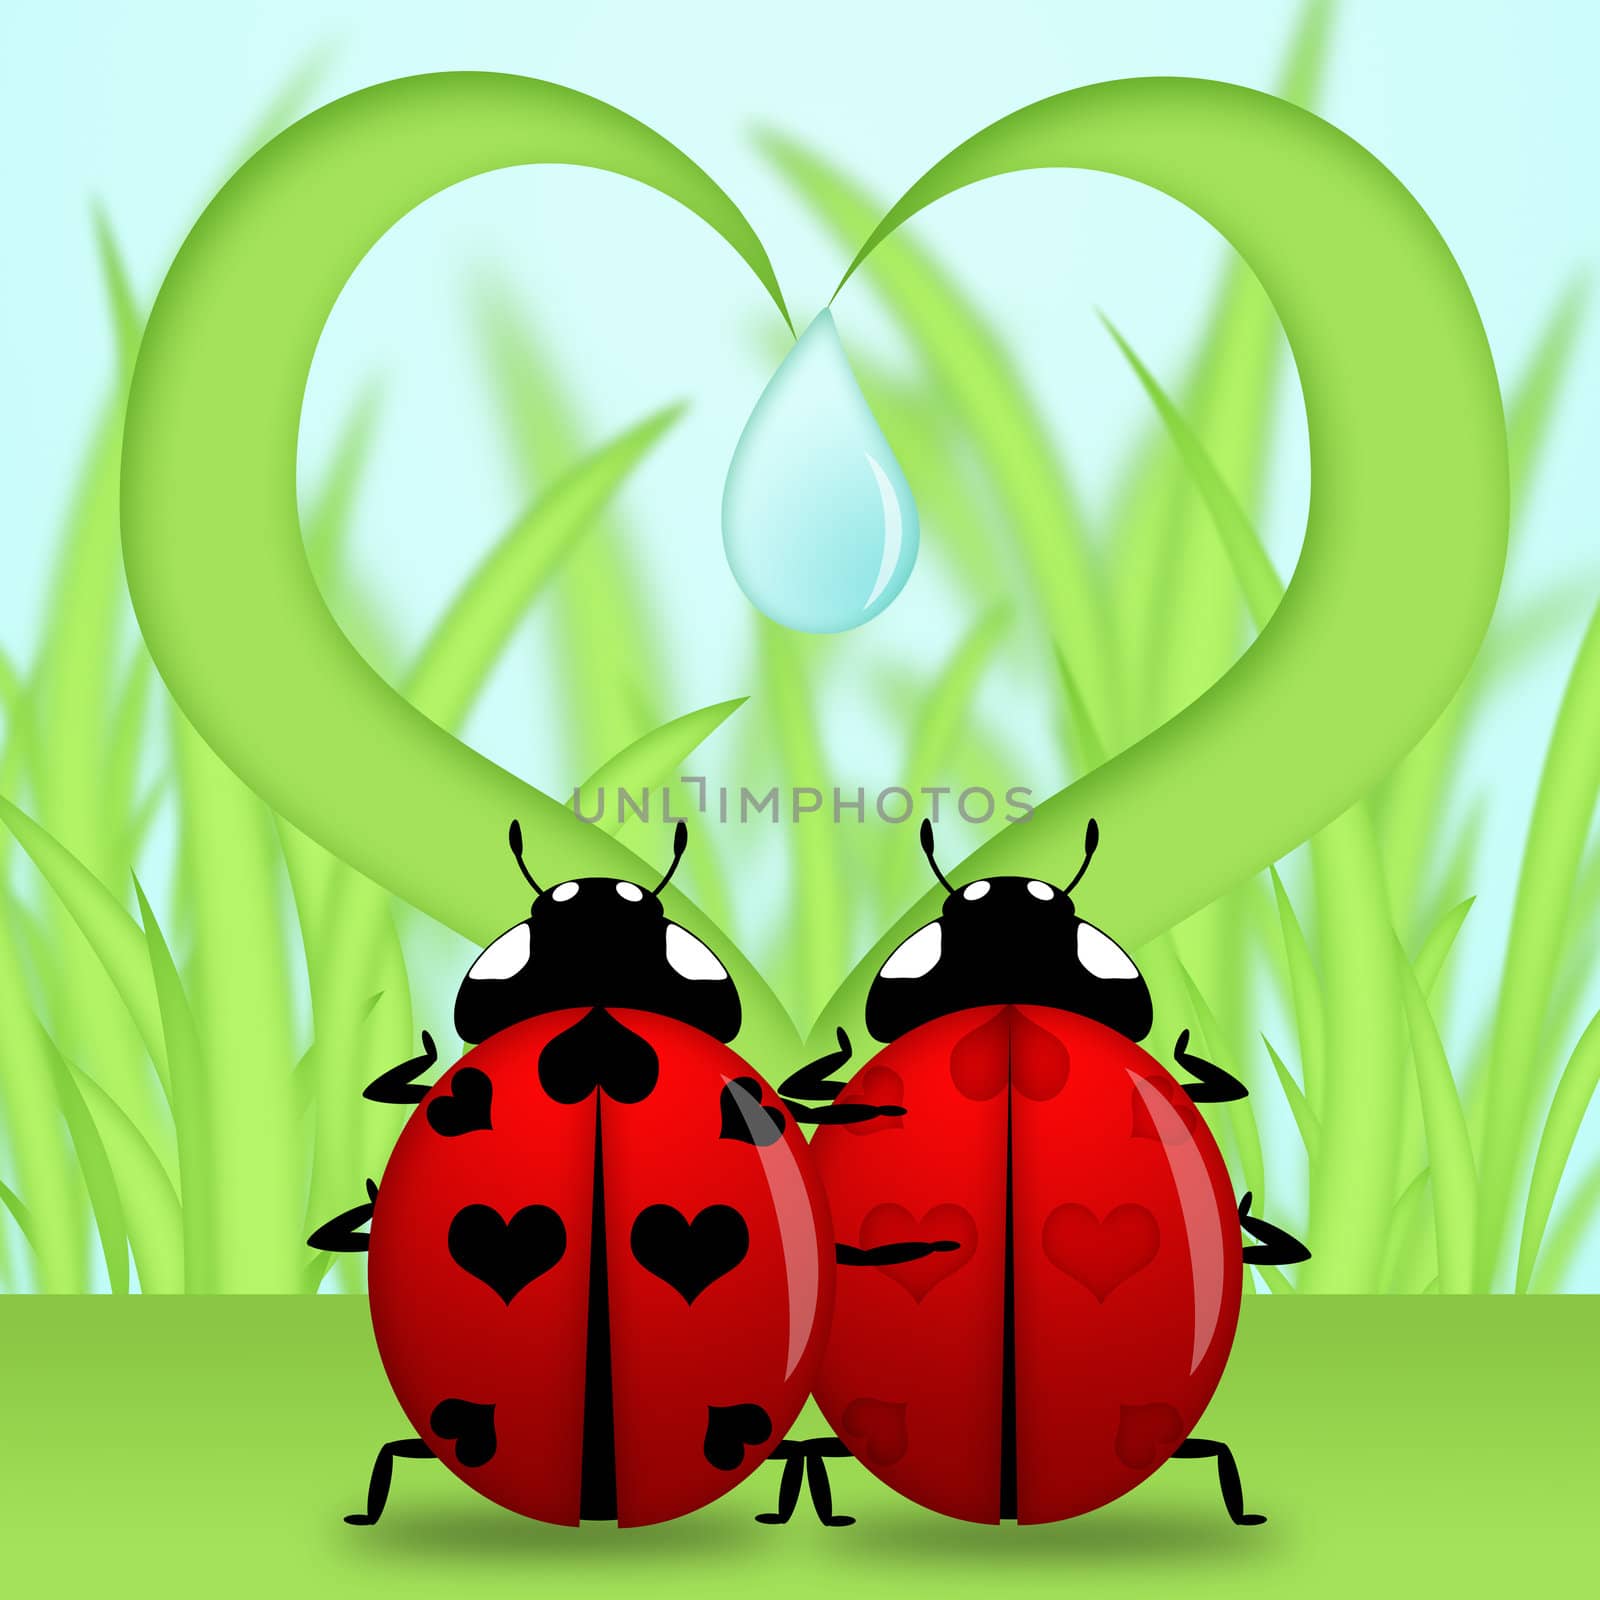 Red Ladybug Couple Under Heart Shape Grass Illustration